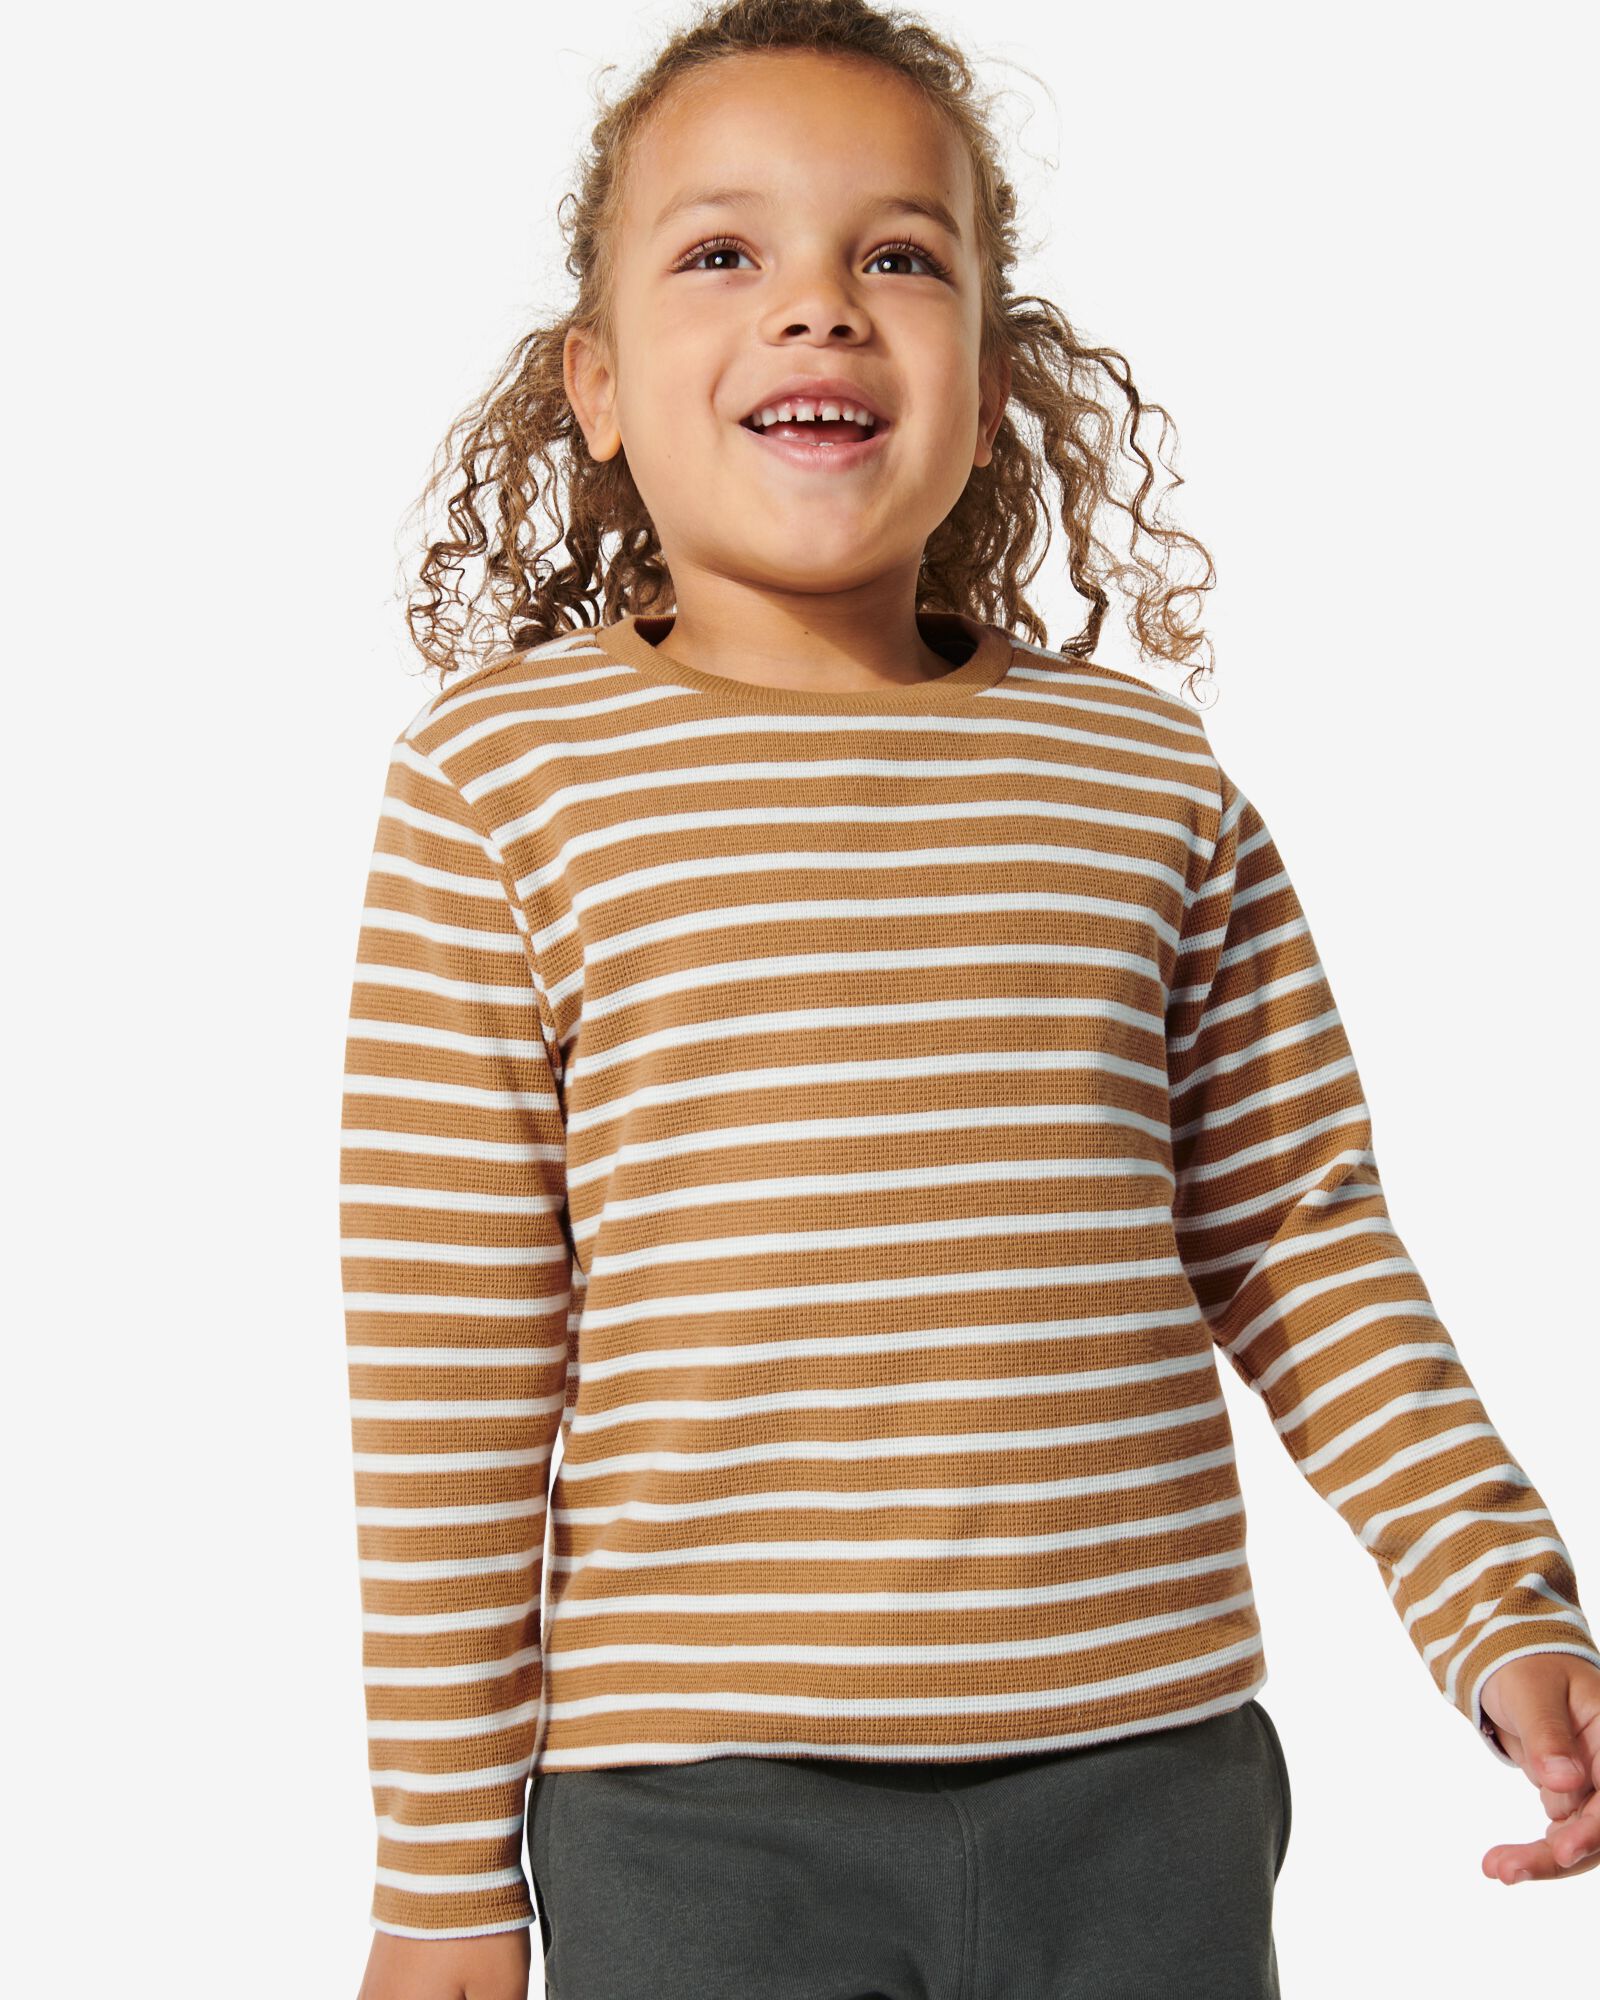 Kinder-Pullover, Struktur, Streifen braun braun - 1000029801 - HEMA